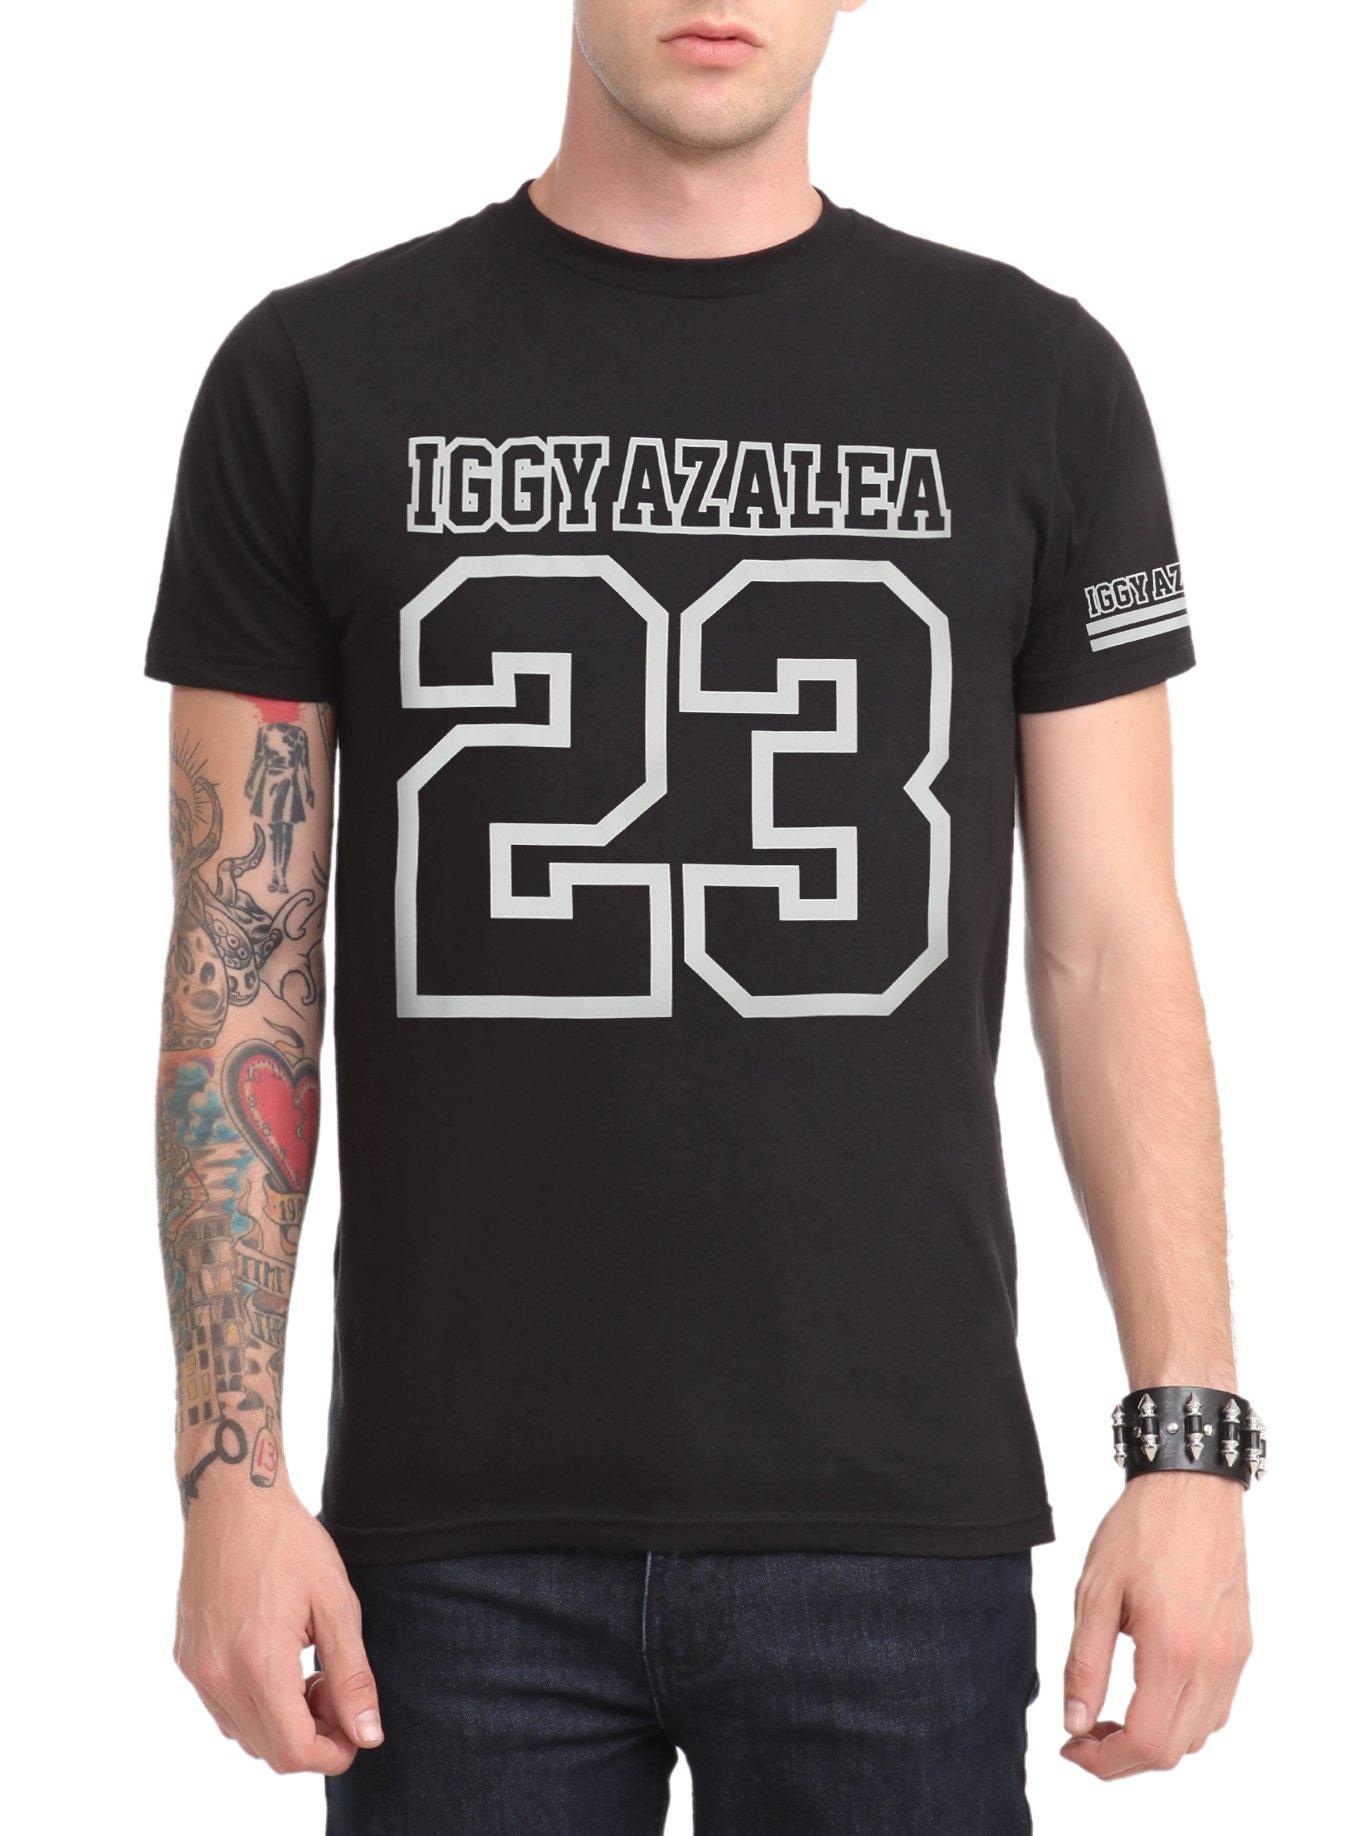 Iggy Azalea 23 T-Shirt, BLACK, hi-res